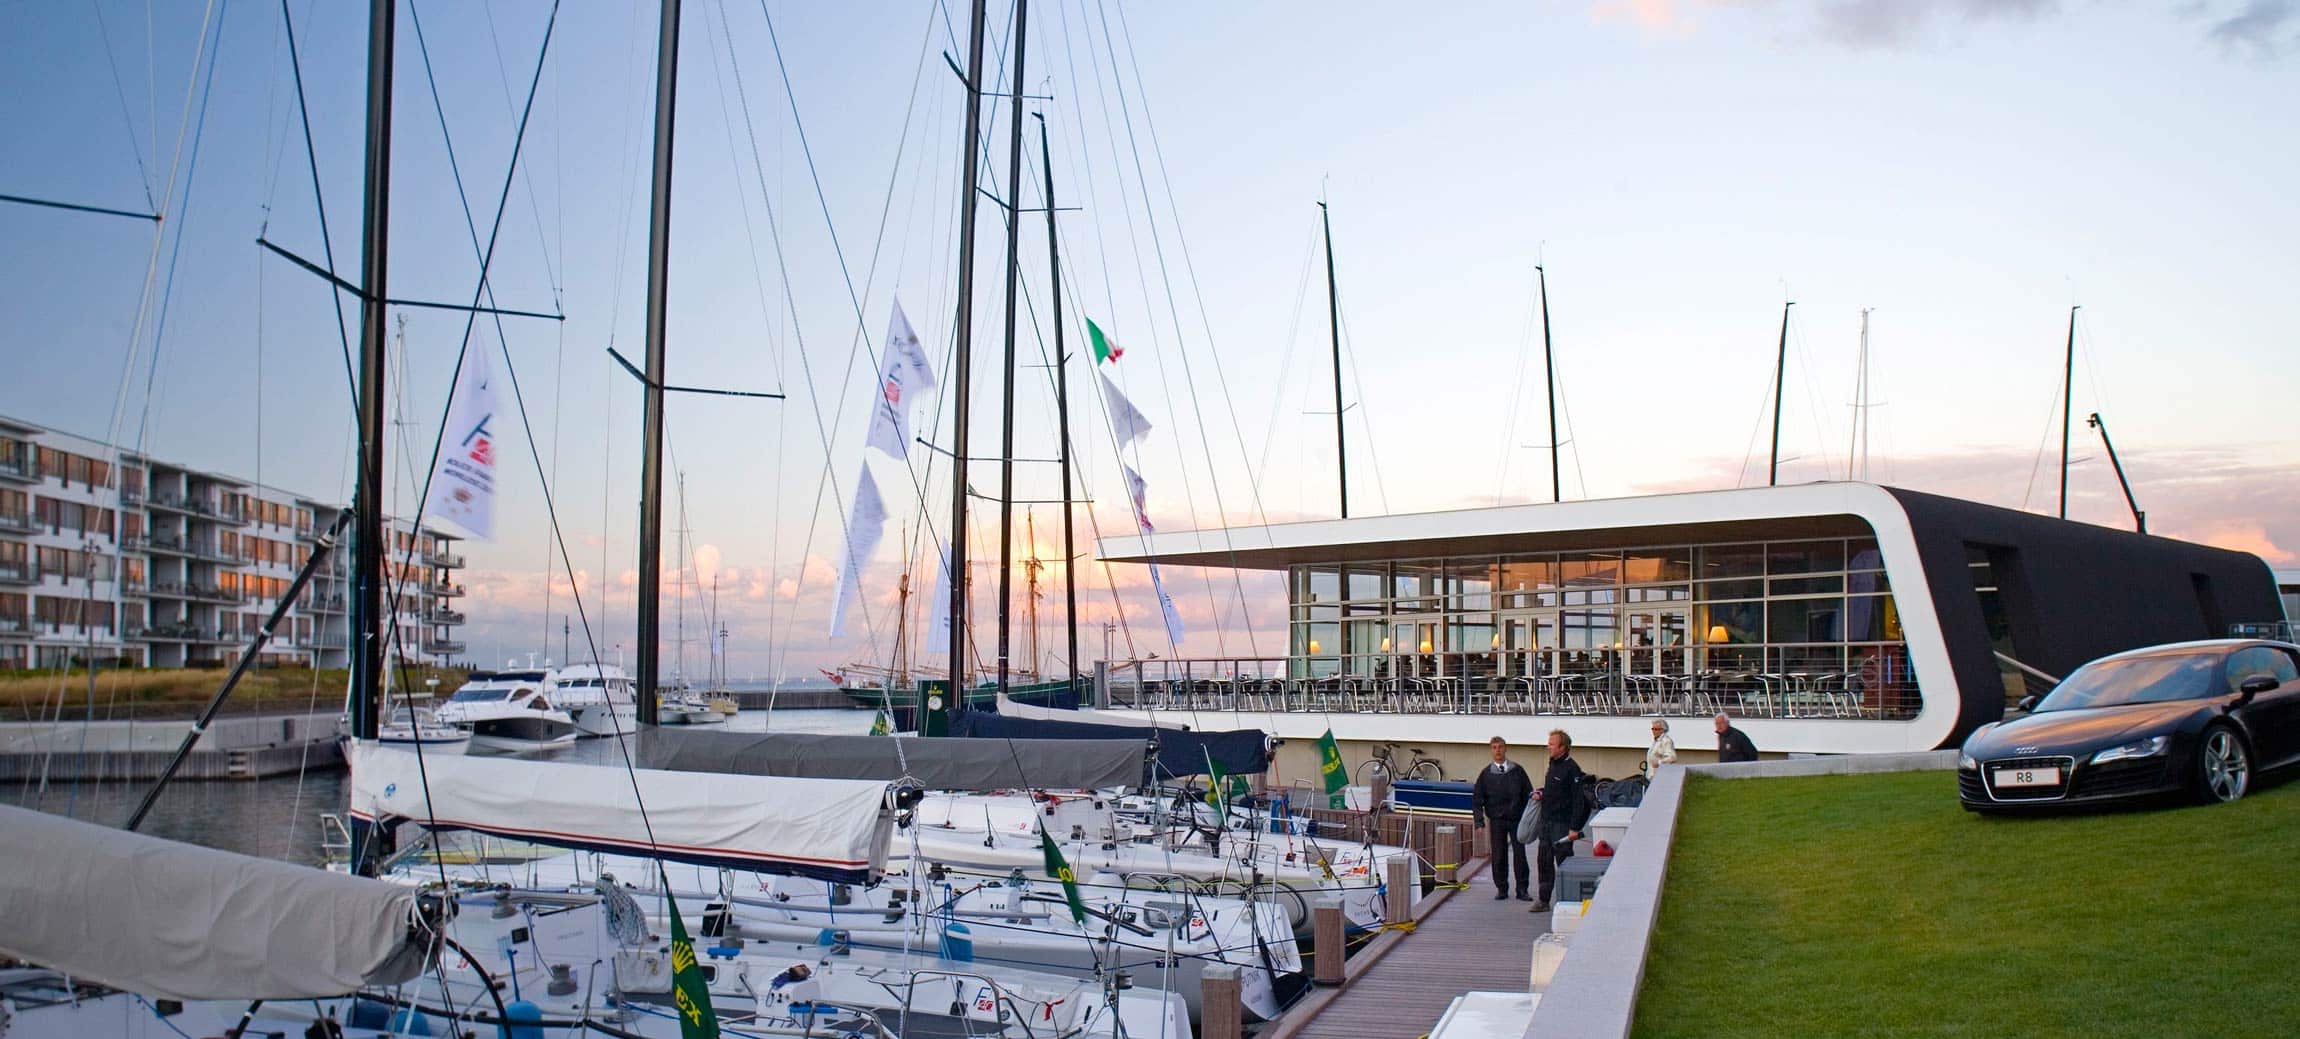 kongelig dansk yachtklub restaurant i tuborg havn